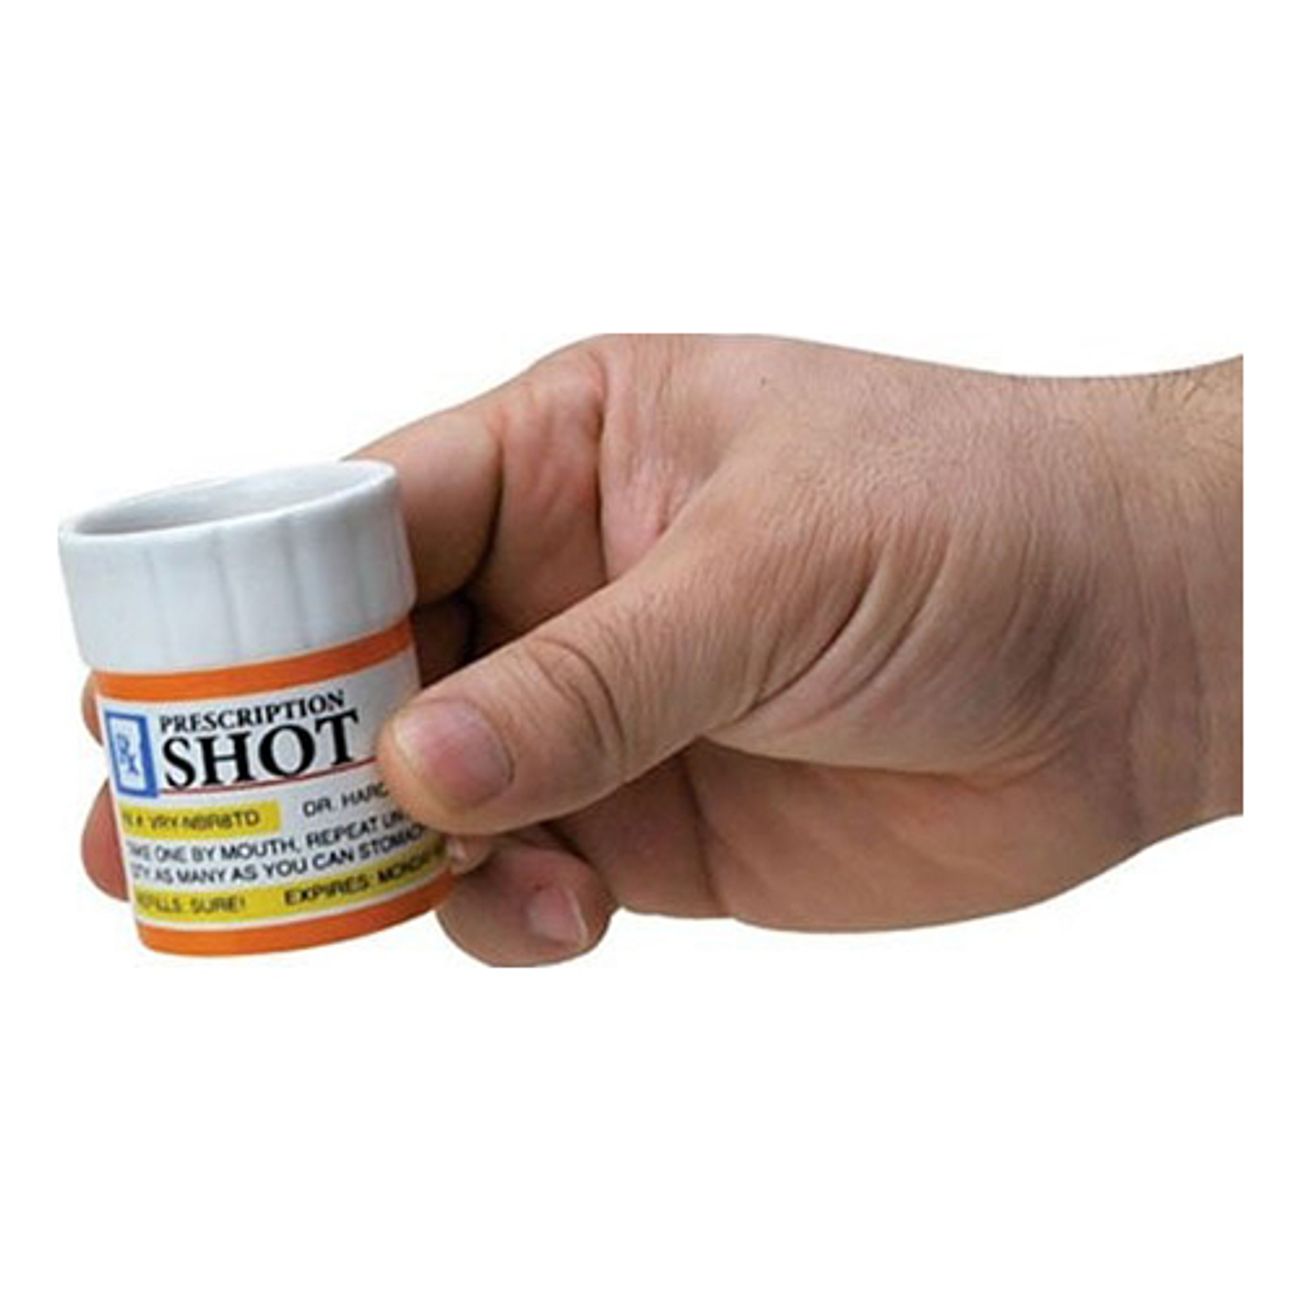 shotglas-prescription-2